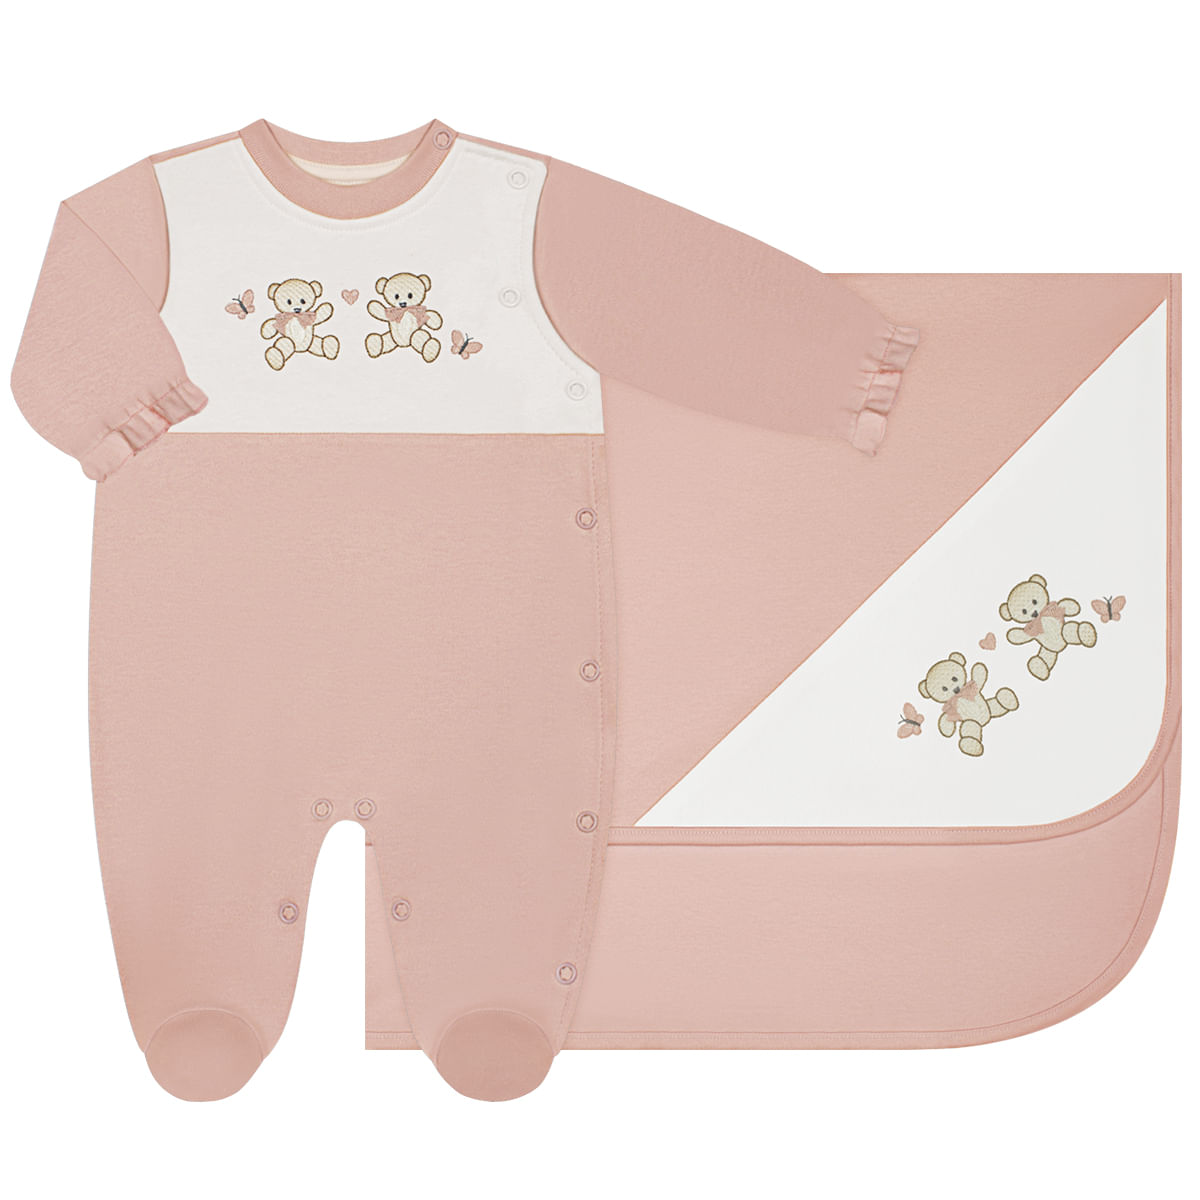 Jogo Maternidade em suedine Antiviral Ursinha: Macacão longo + Manta -  Anjos Baby no bebefacil loja de roupas para bebes - bebefacilMobile